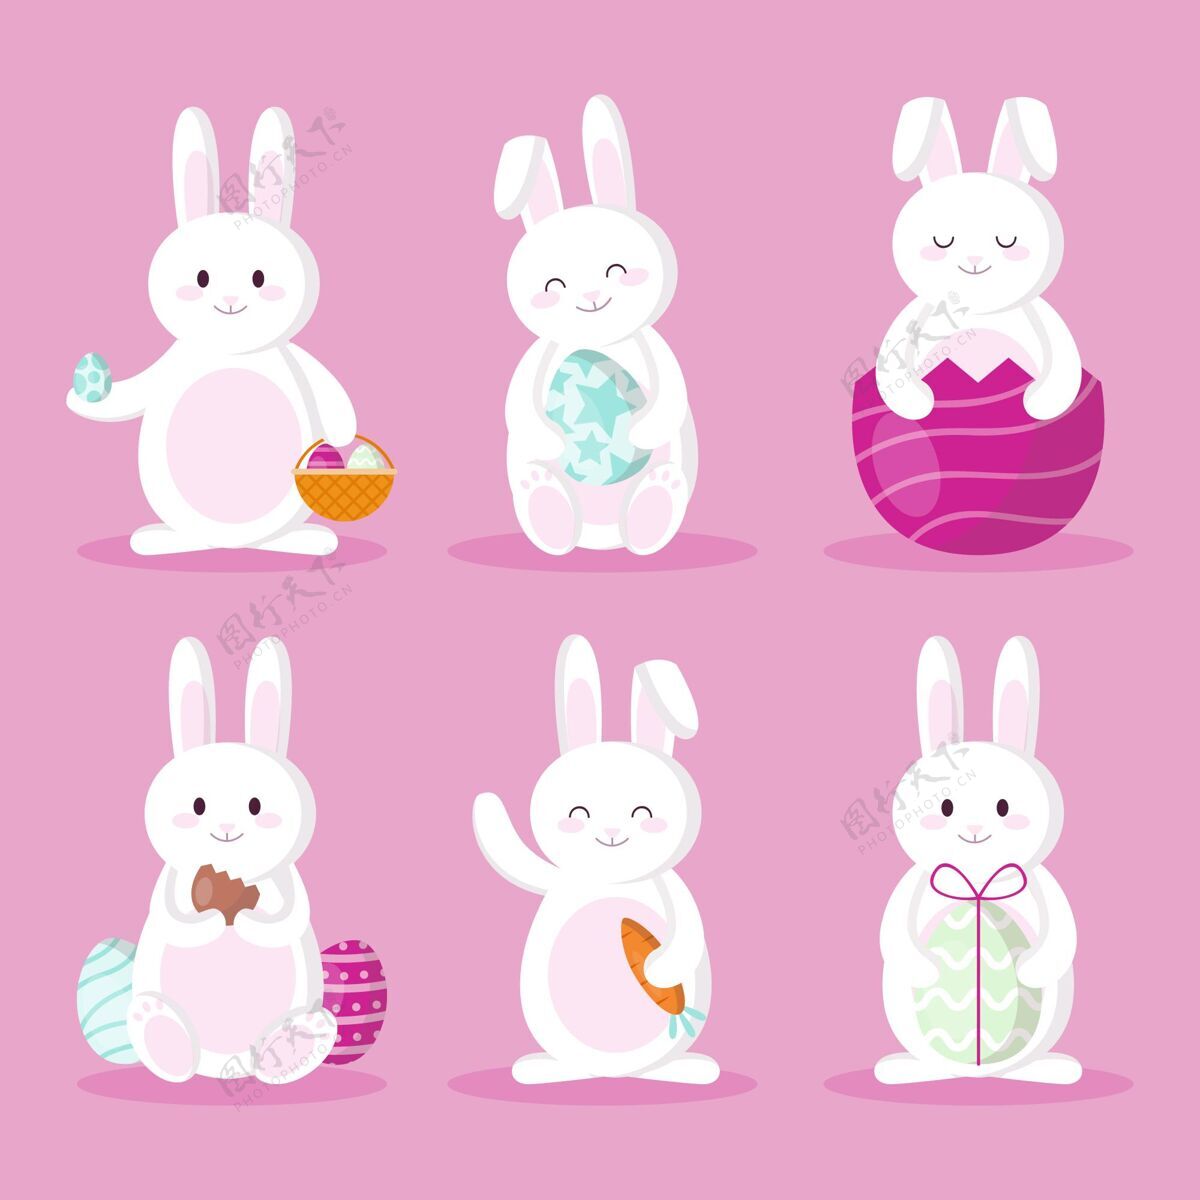 公寓设计复活节兔子包纪念包分类